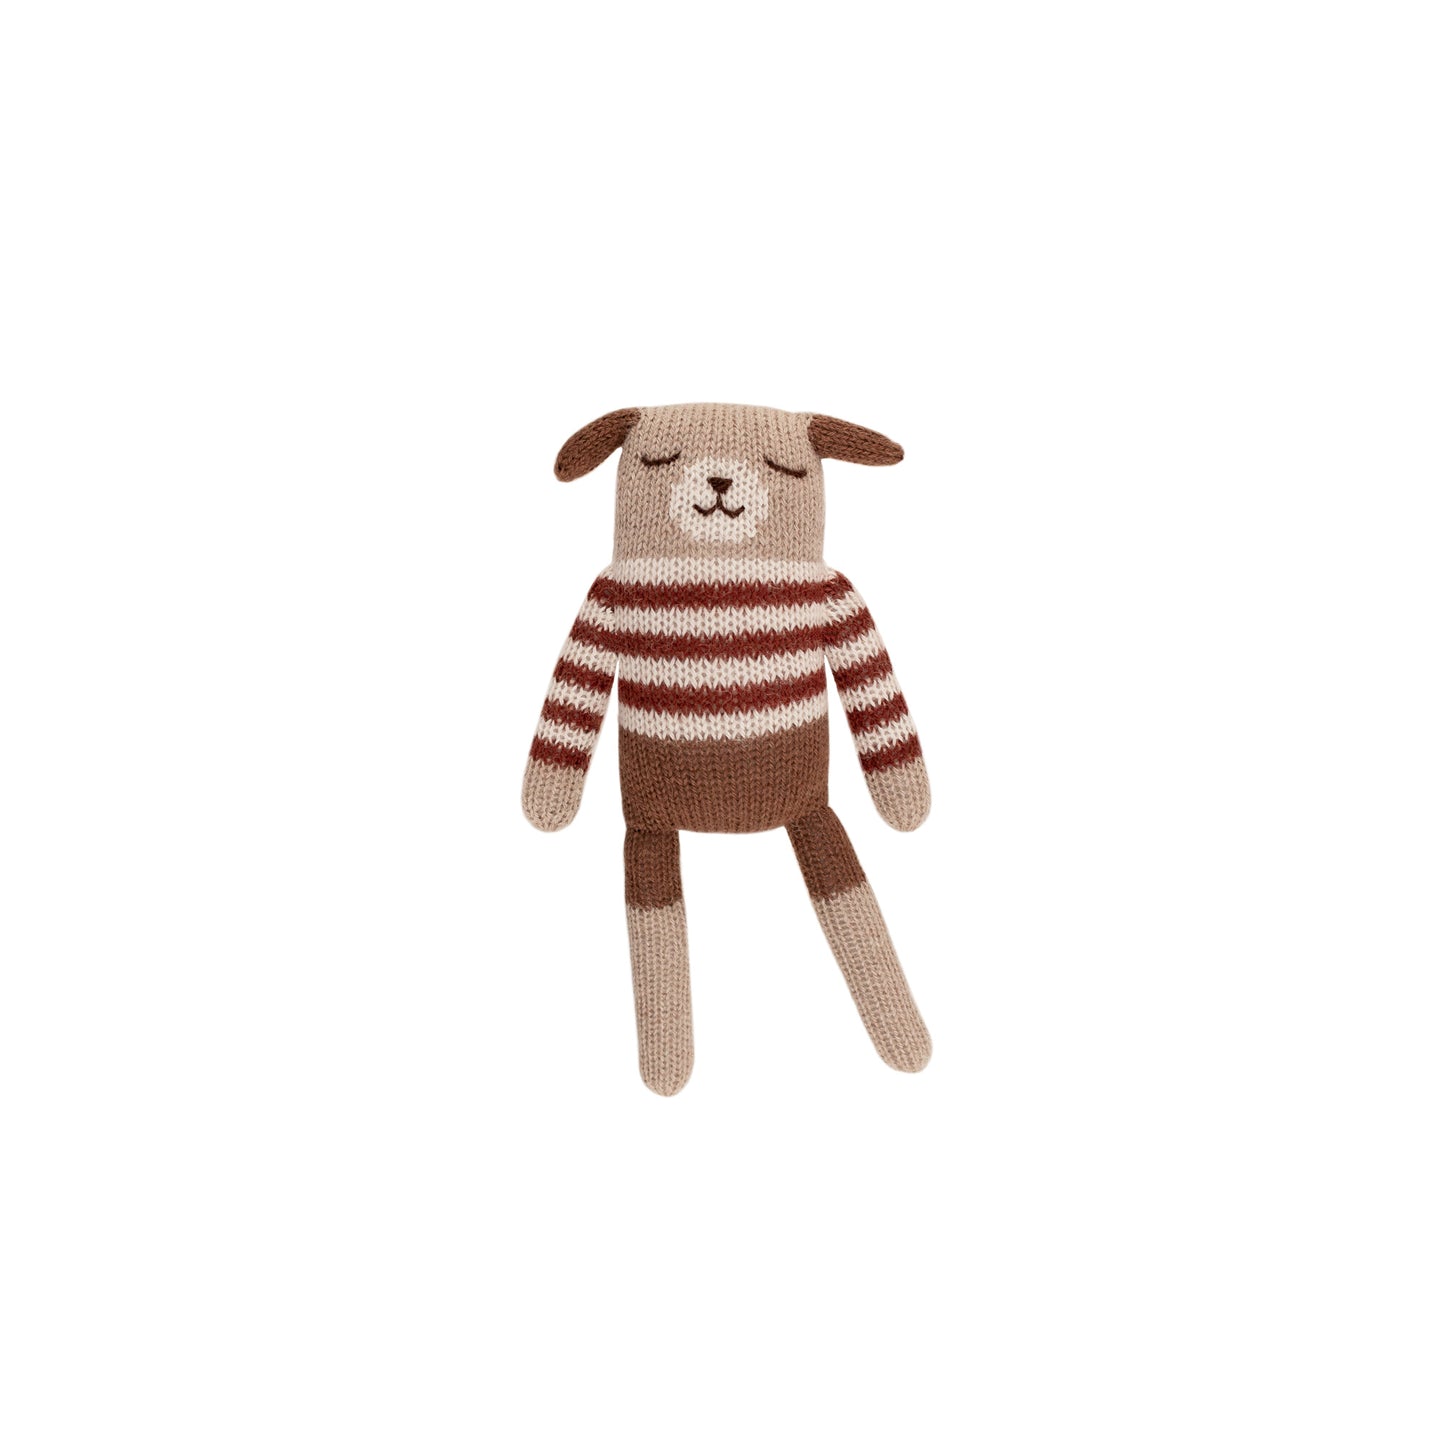 Puppy in Sienna Striped Sweater